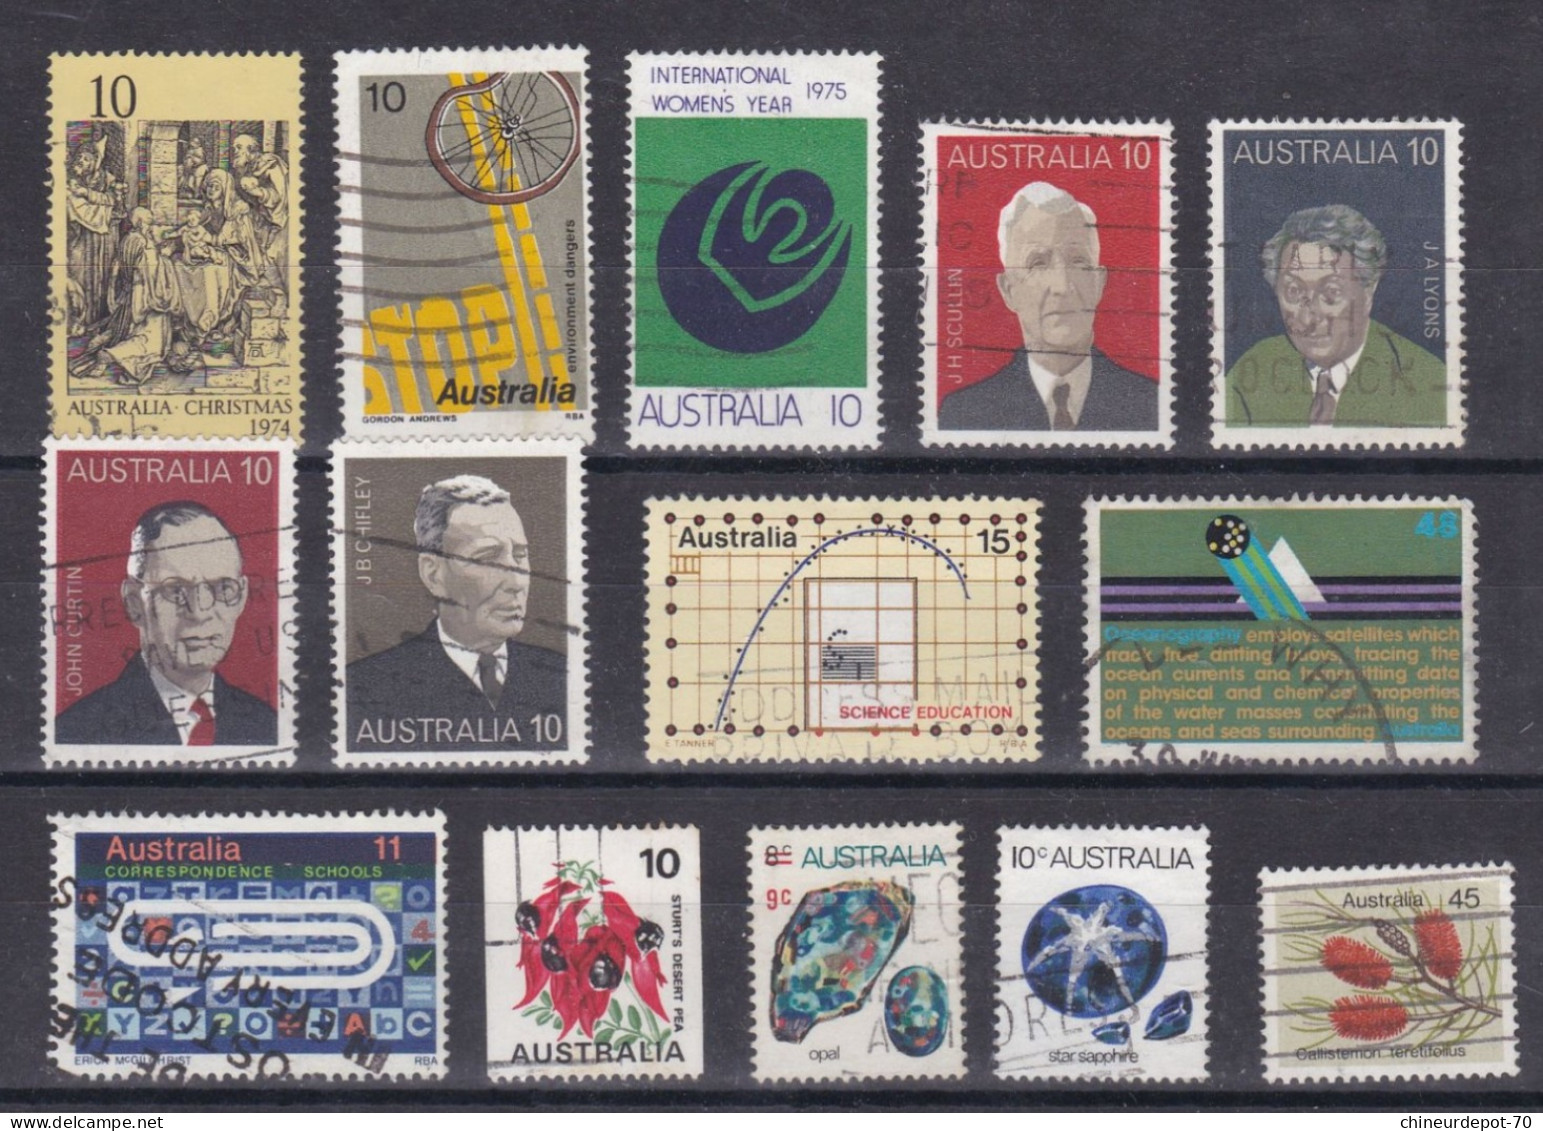 lot de timbres australie australia  Australien voir 10 photos